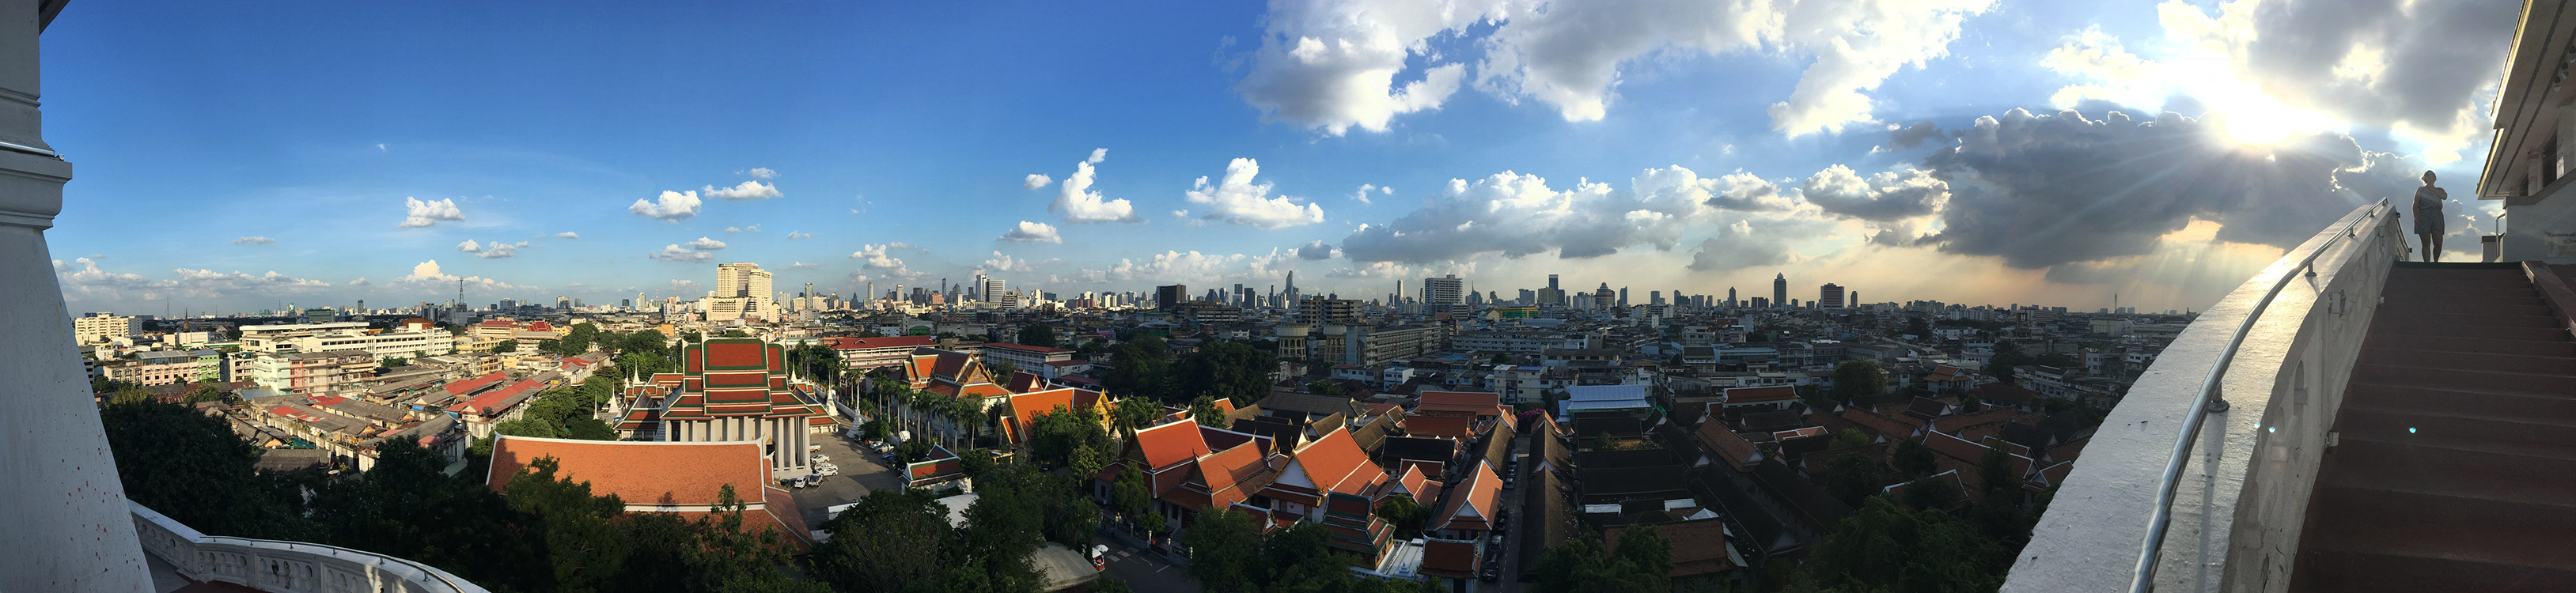 Panorama über Bangkok am Golden Mount Wat Saket